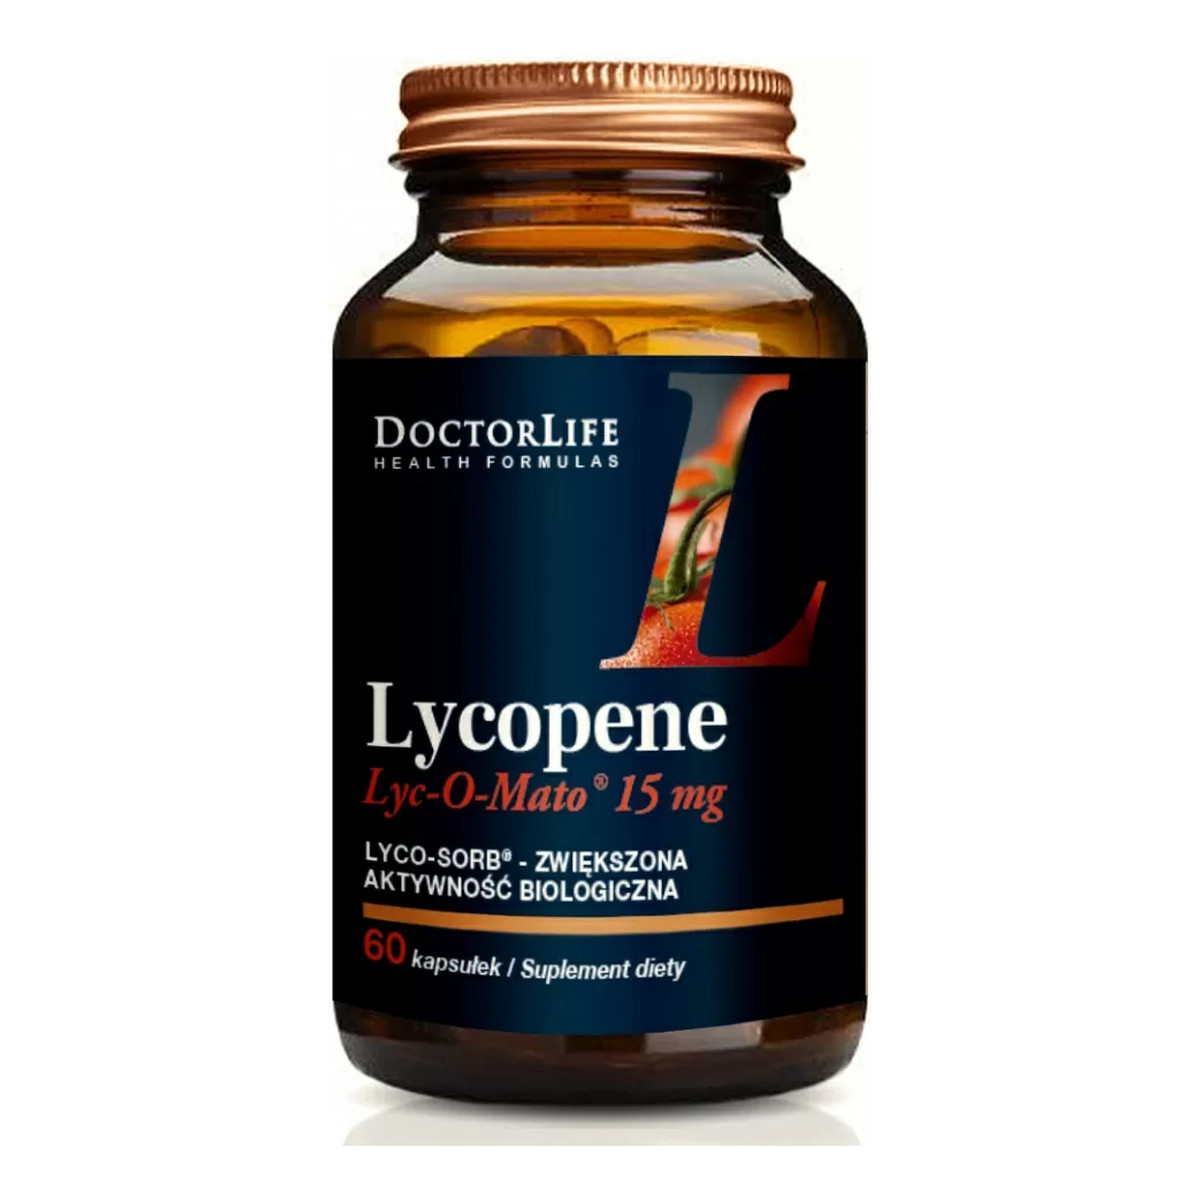 Doctor Life Lycopene likopen 15mg ekstrakt z pomidorów suplement diety 60 tabletek